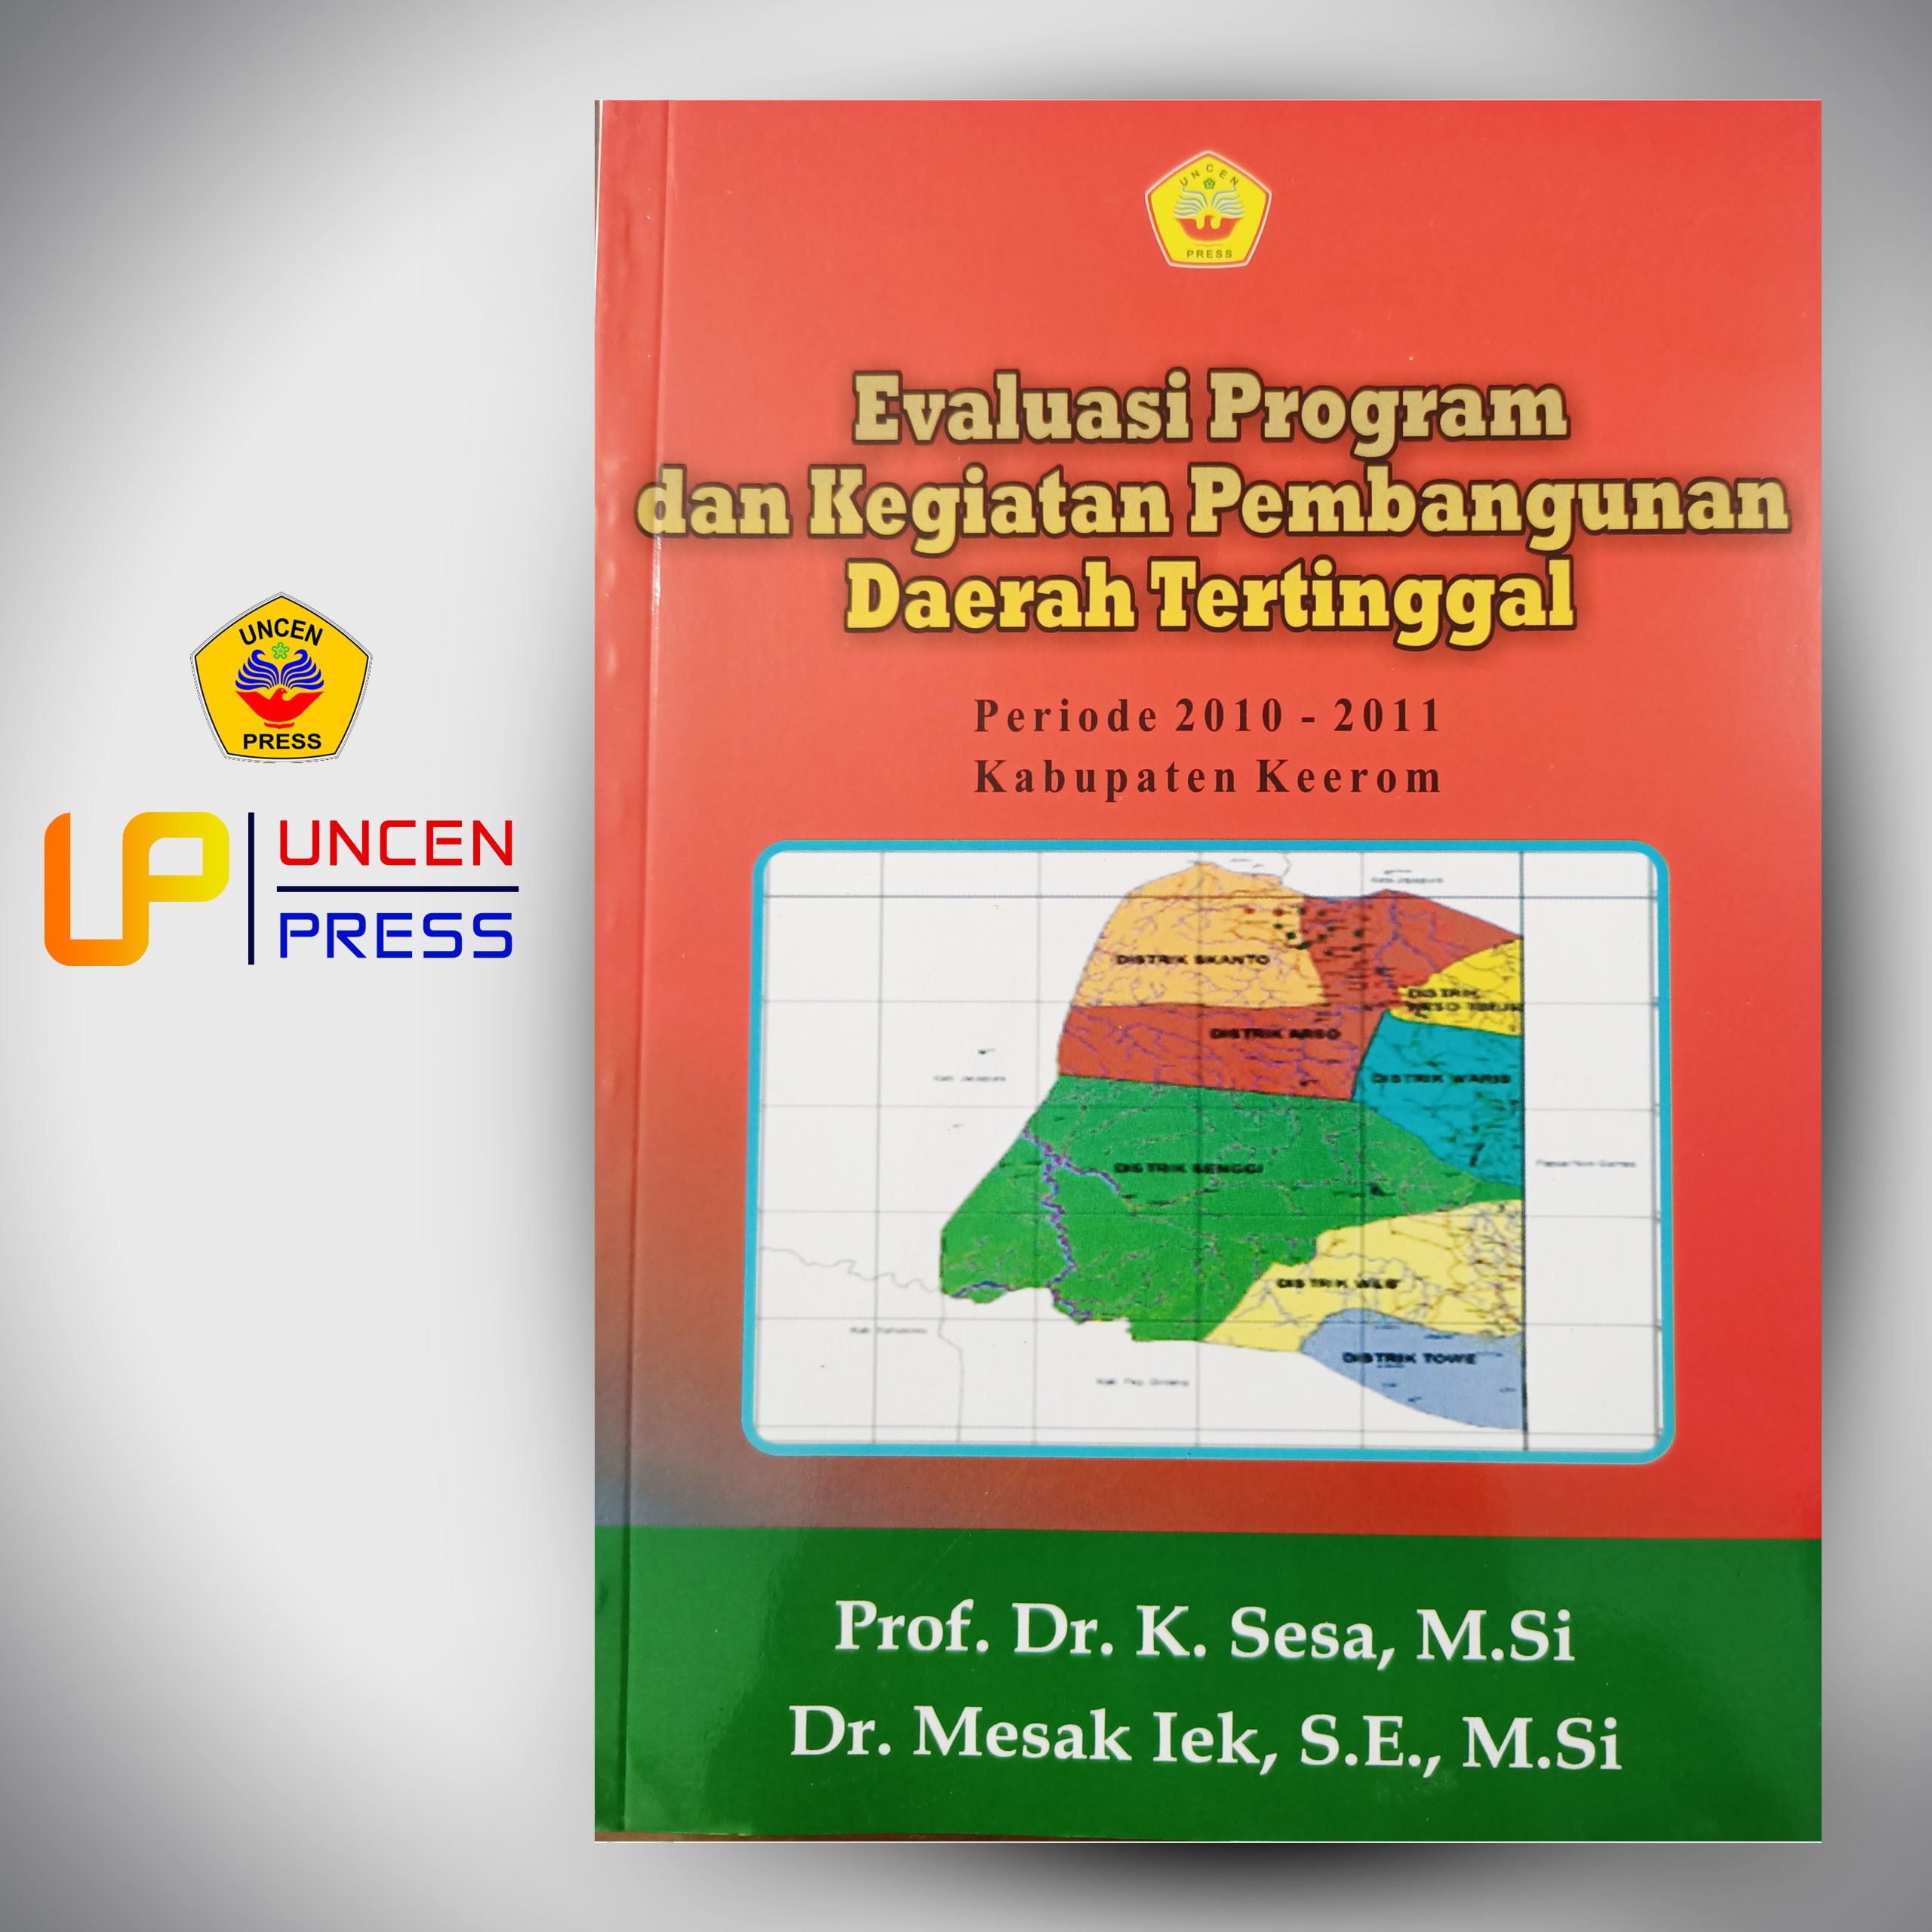 Evaluasi Program dan Kegiatan Pembangunan Daerah Tertinggal Periode 2010-2011 Kabupaten Keerom